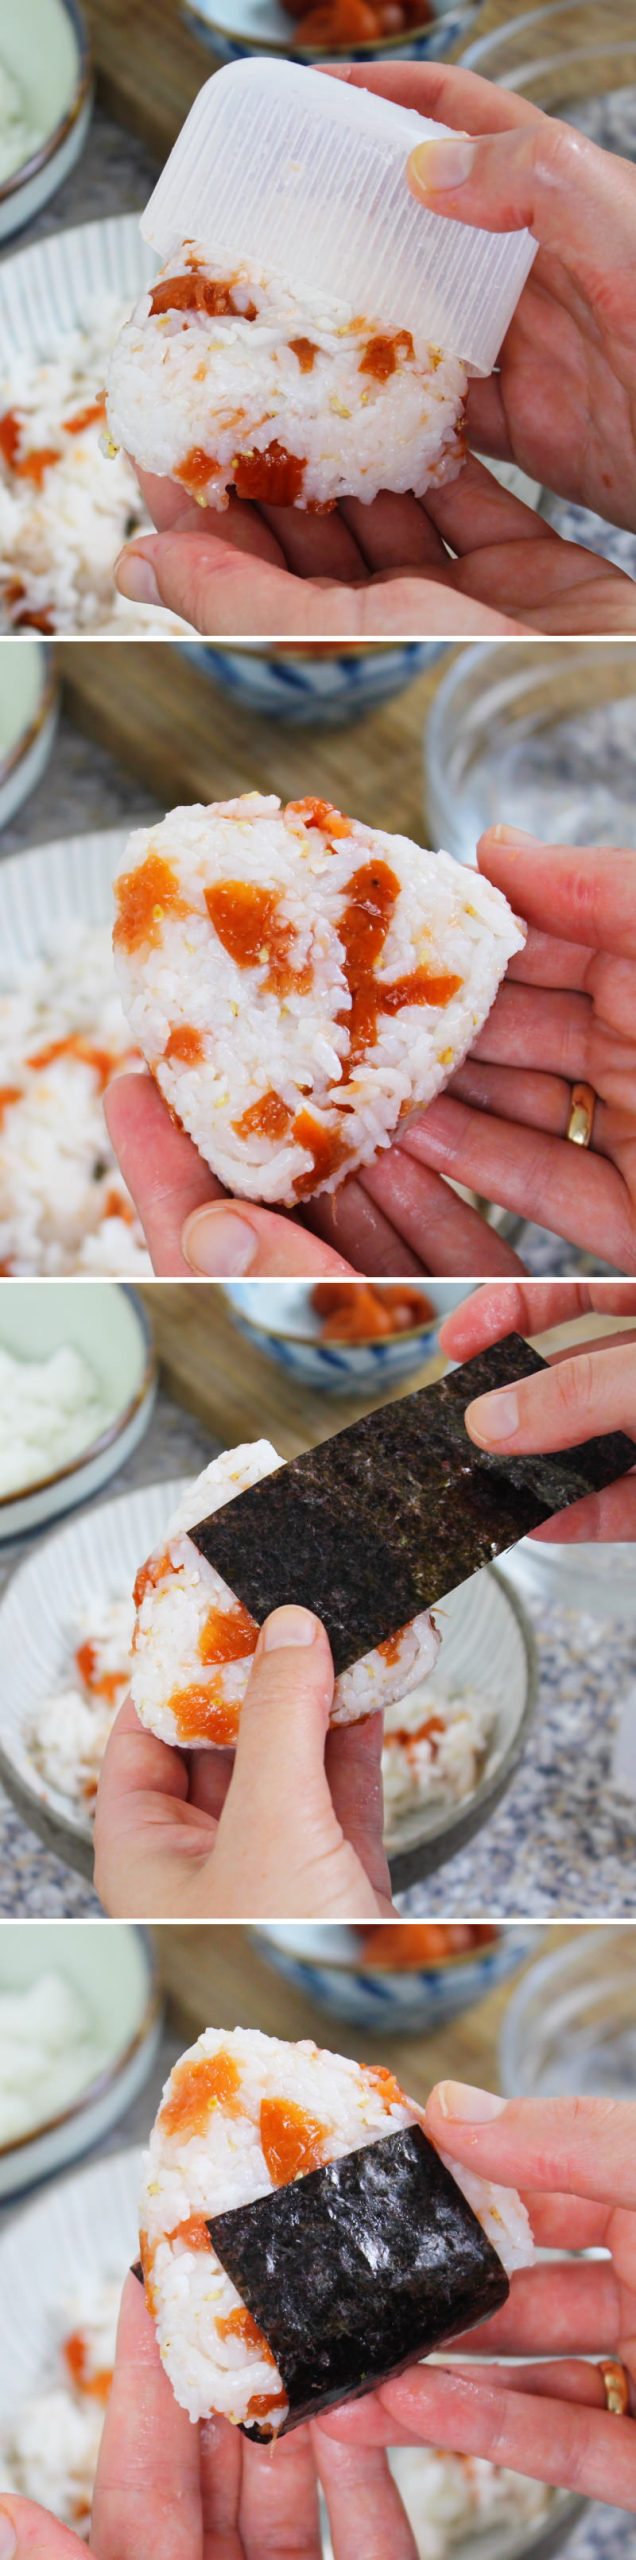 Onigiri mit Ume Schritt 7 Reis formen und mit Nori umwickeln